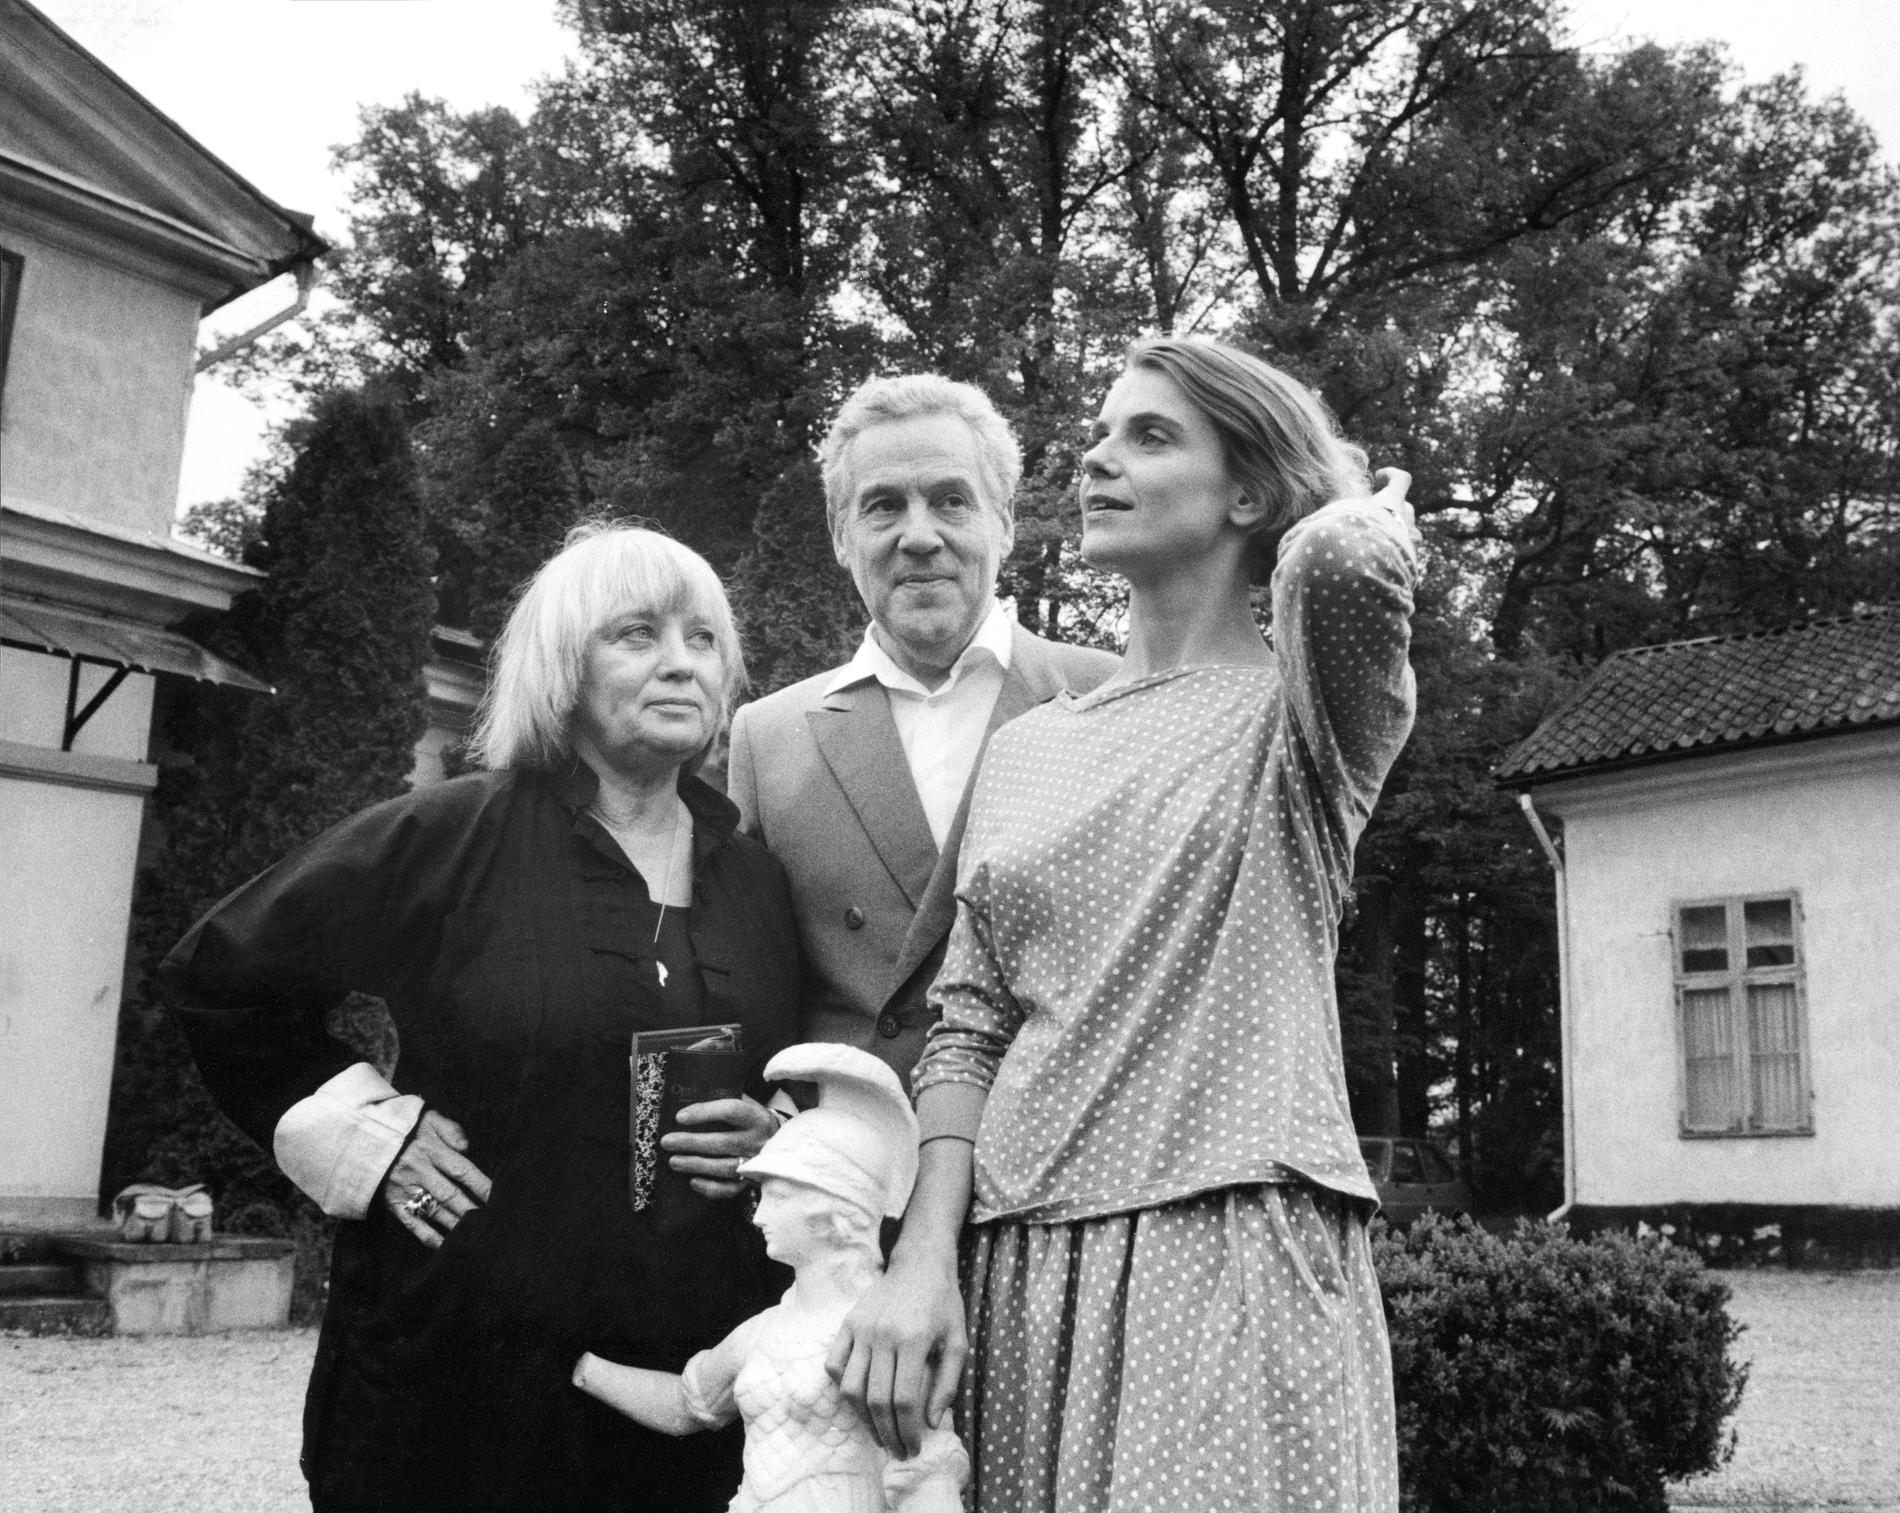  Mai Zetterling, Erland Josephson och Stina Ekblad inför filmen ”Amorosa” 1985.